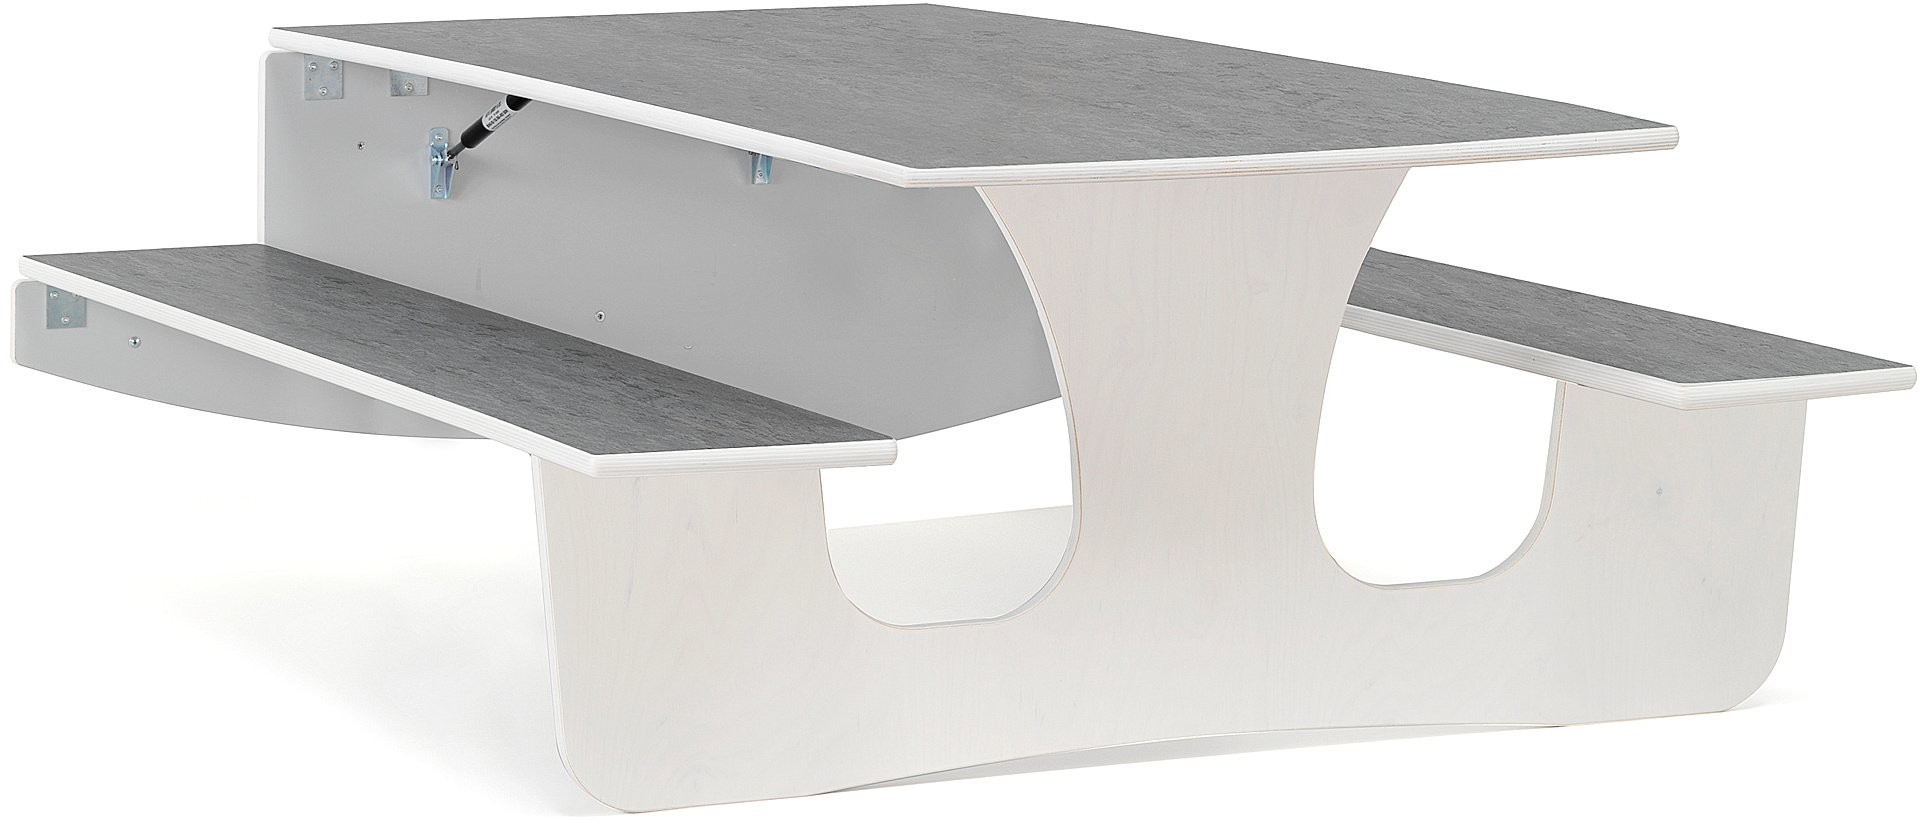 AJ Produkty Ścienny stół składany LUCAS, 1400x950x570 mm, szare linoleum, biały